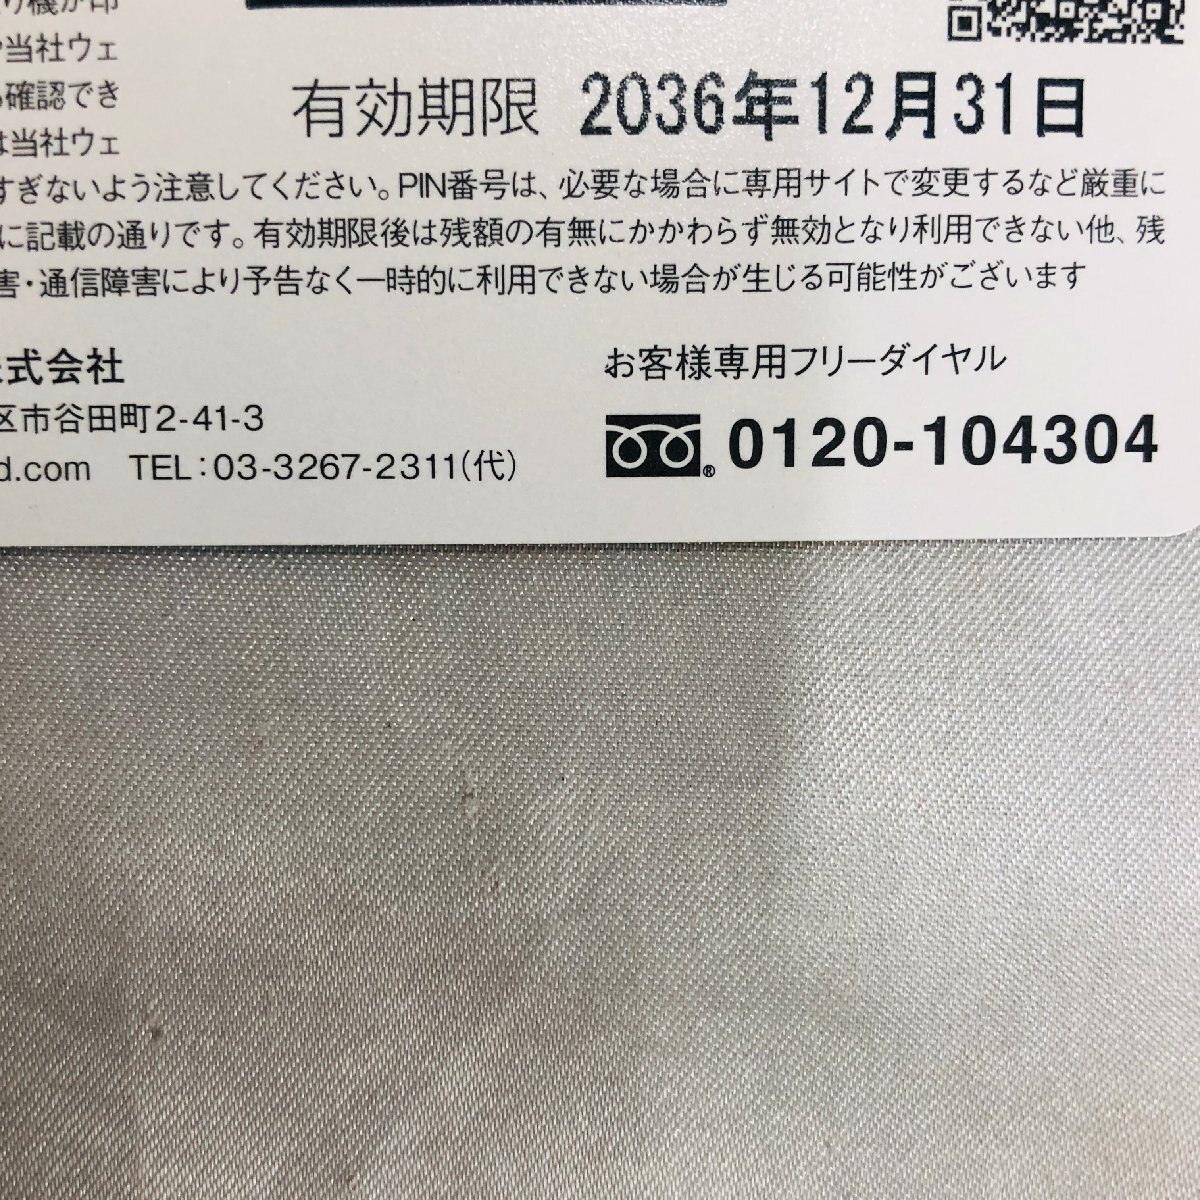 [ не использовался товар /TO] Toshocard NEXT 500 иен ×20 листов 10000 иен минут иметь временные ограничения действия 2036 год 12 месяц 31 день осталось высота подтверждено MZ0422/0075